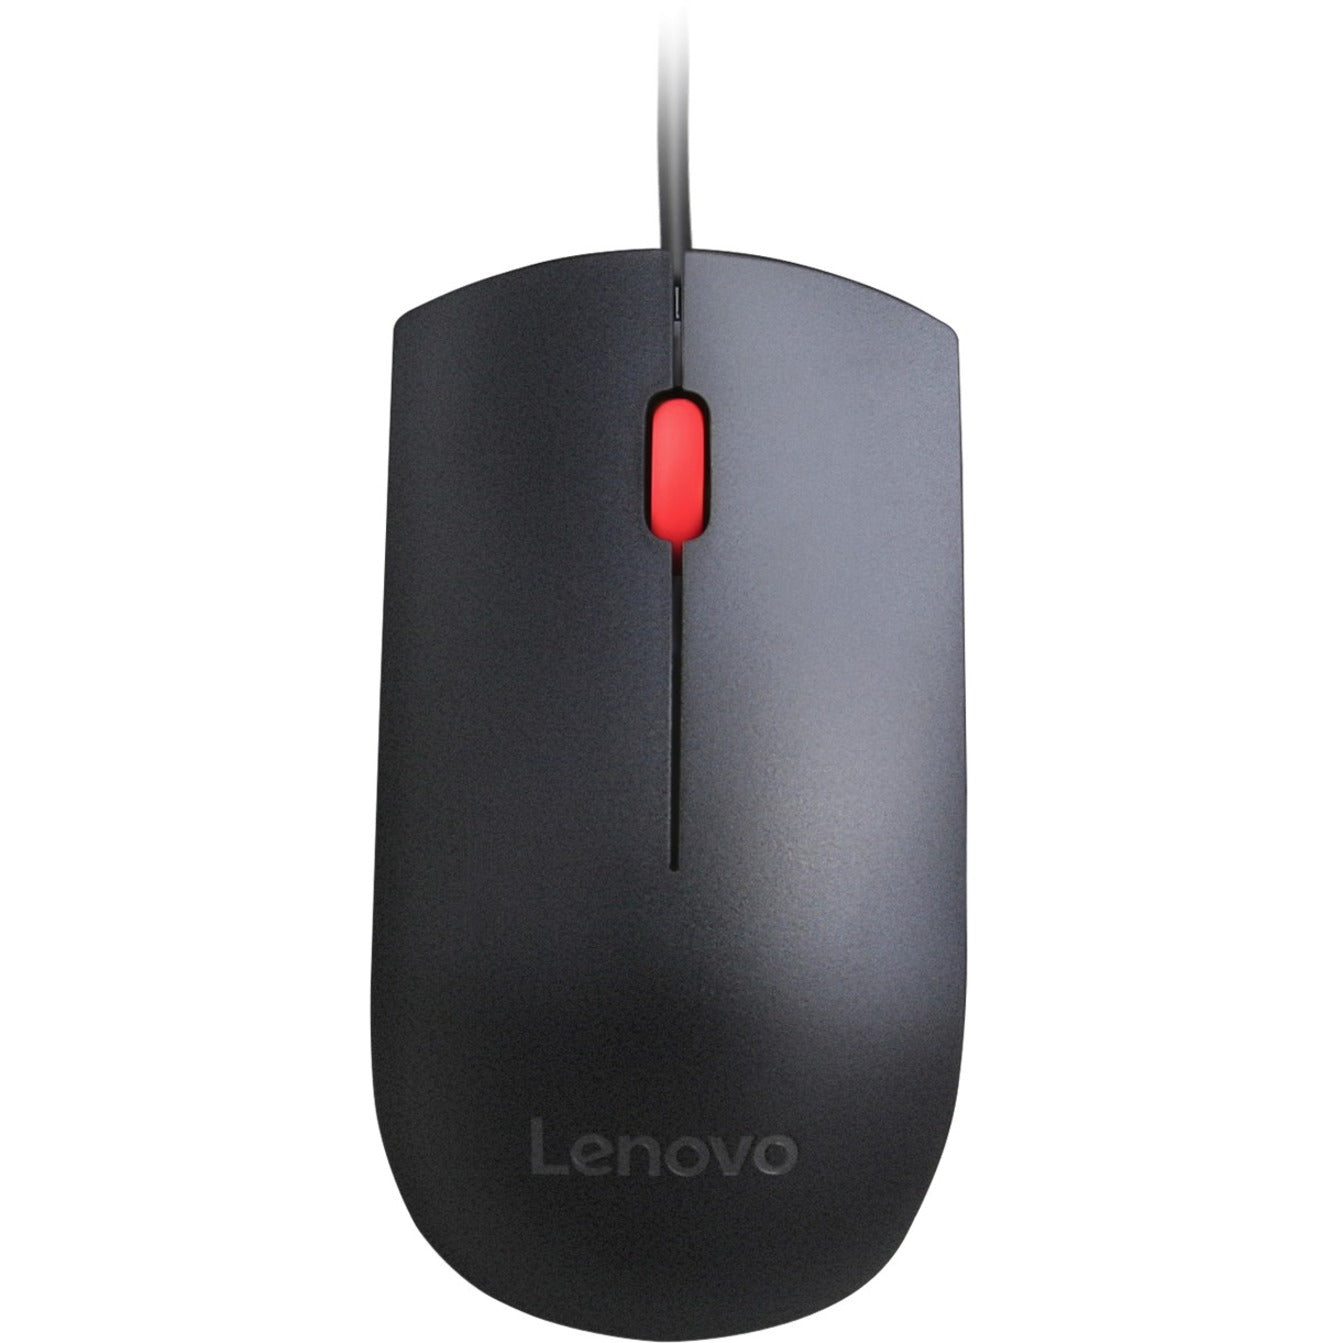 Lenovo 4Y50R20863 Essential USB Mouse, Symmetrical Design, 1600 DPI, Scroll Wheel